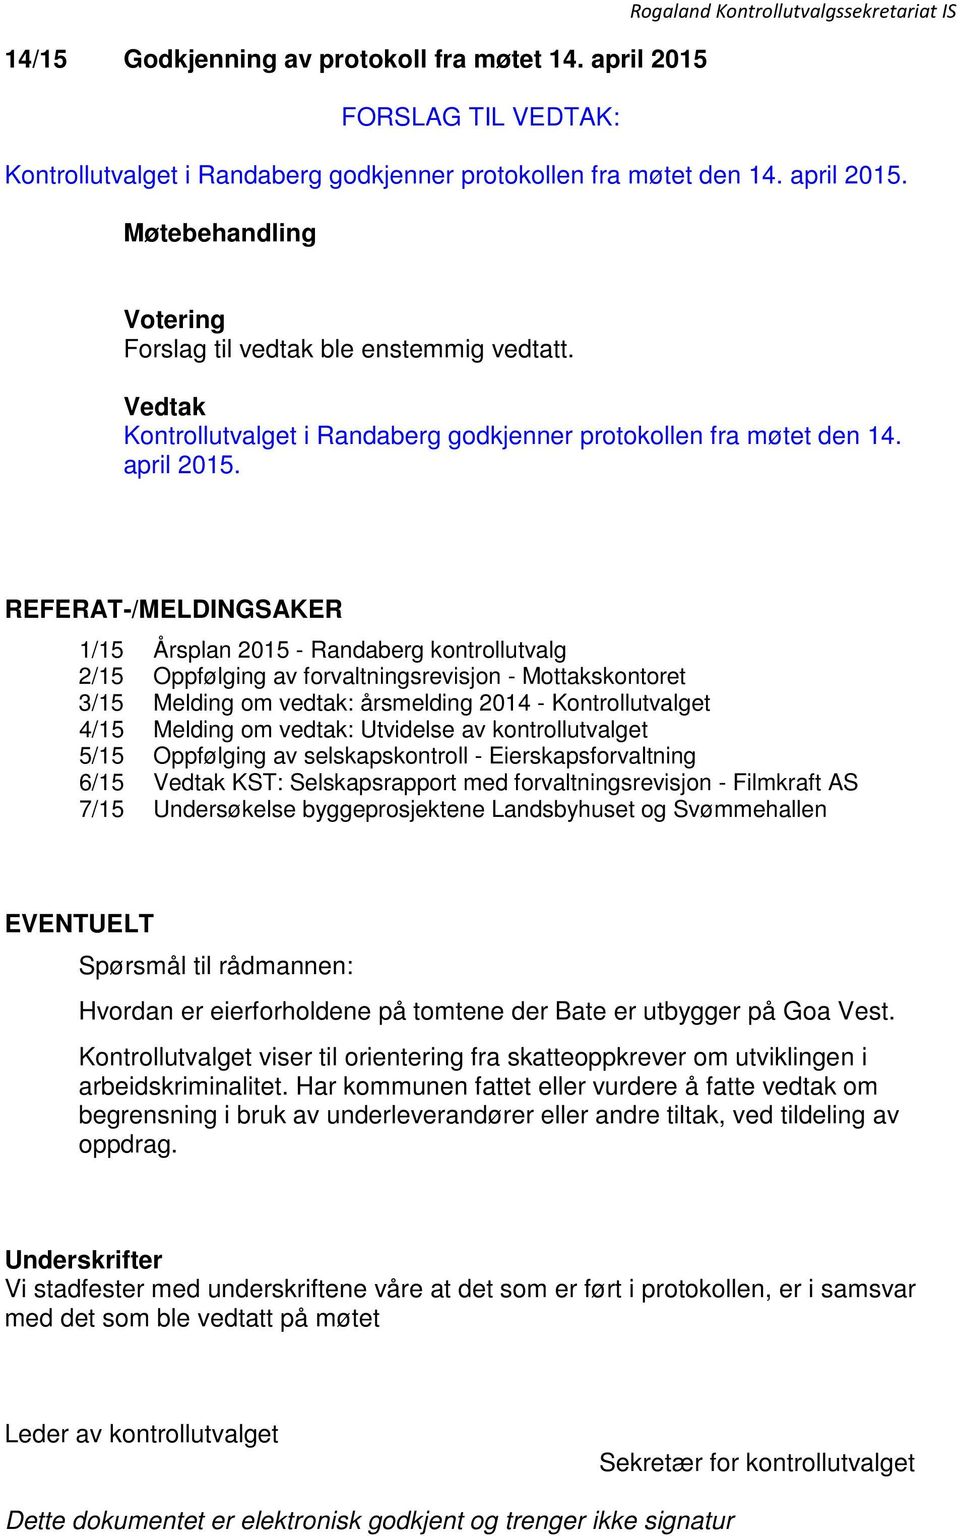 REFERAT-/MELDINGSAKER 1/15 Årsplan 2015 - Randaberg kontrollutvalg 2/15 Oppfølging av forvaltningsrevisjon - Mottakskontoret 3/15 Melding om vedtak: årsmelding 2014 - Kontrollutvalget 4/15 Melding om